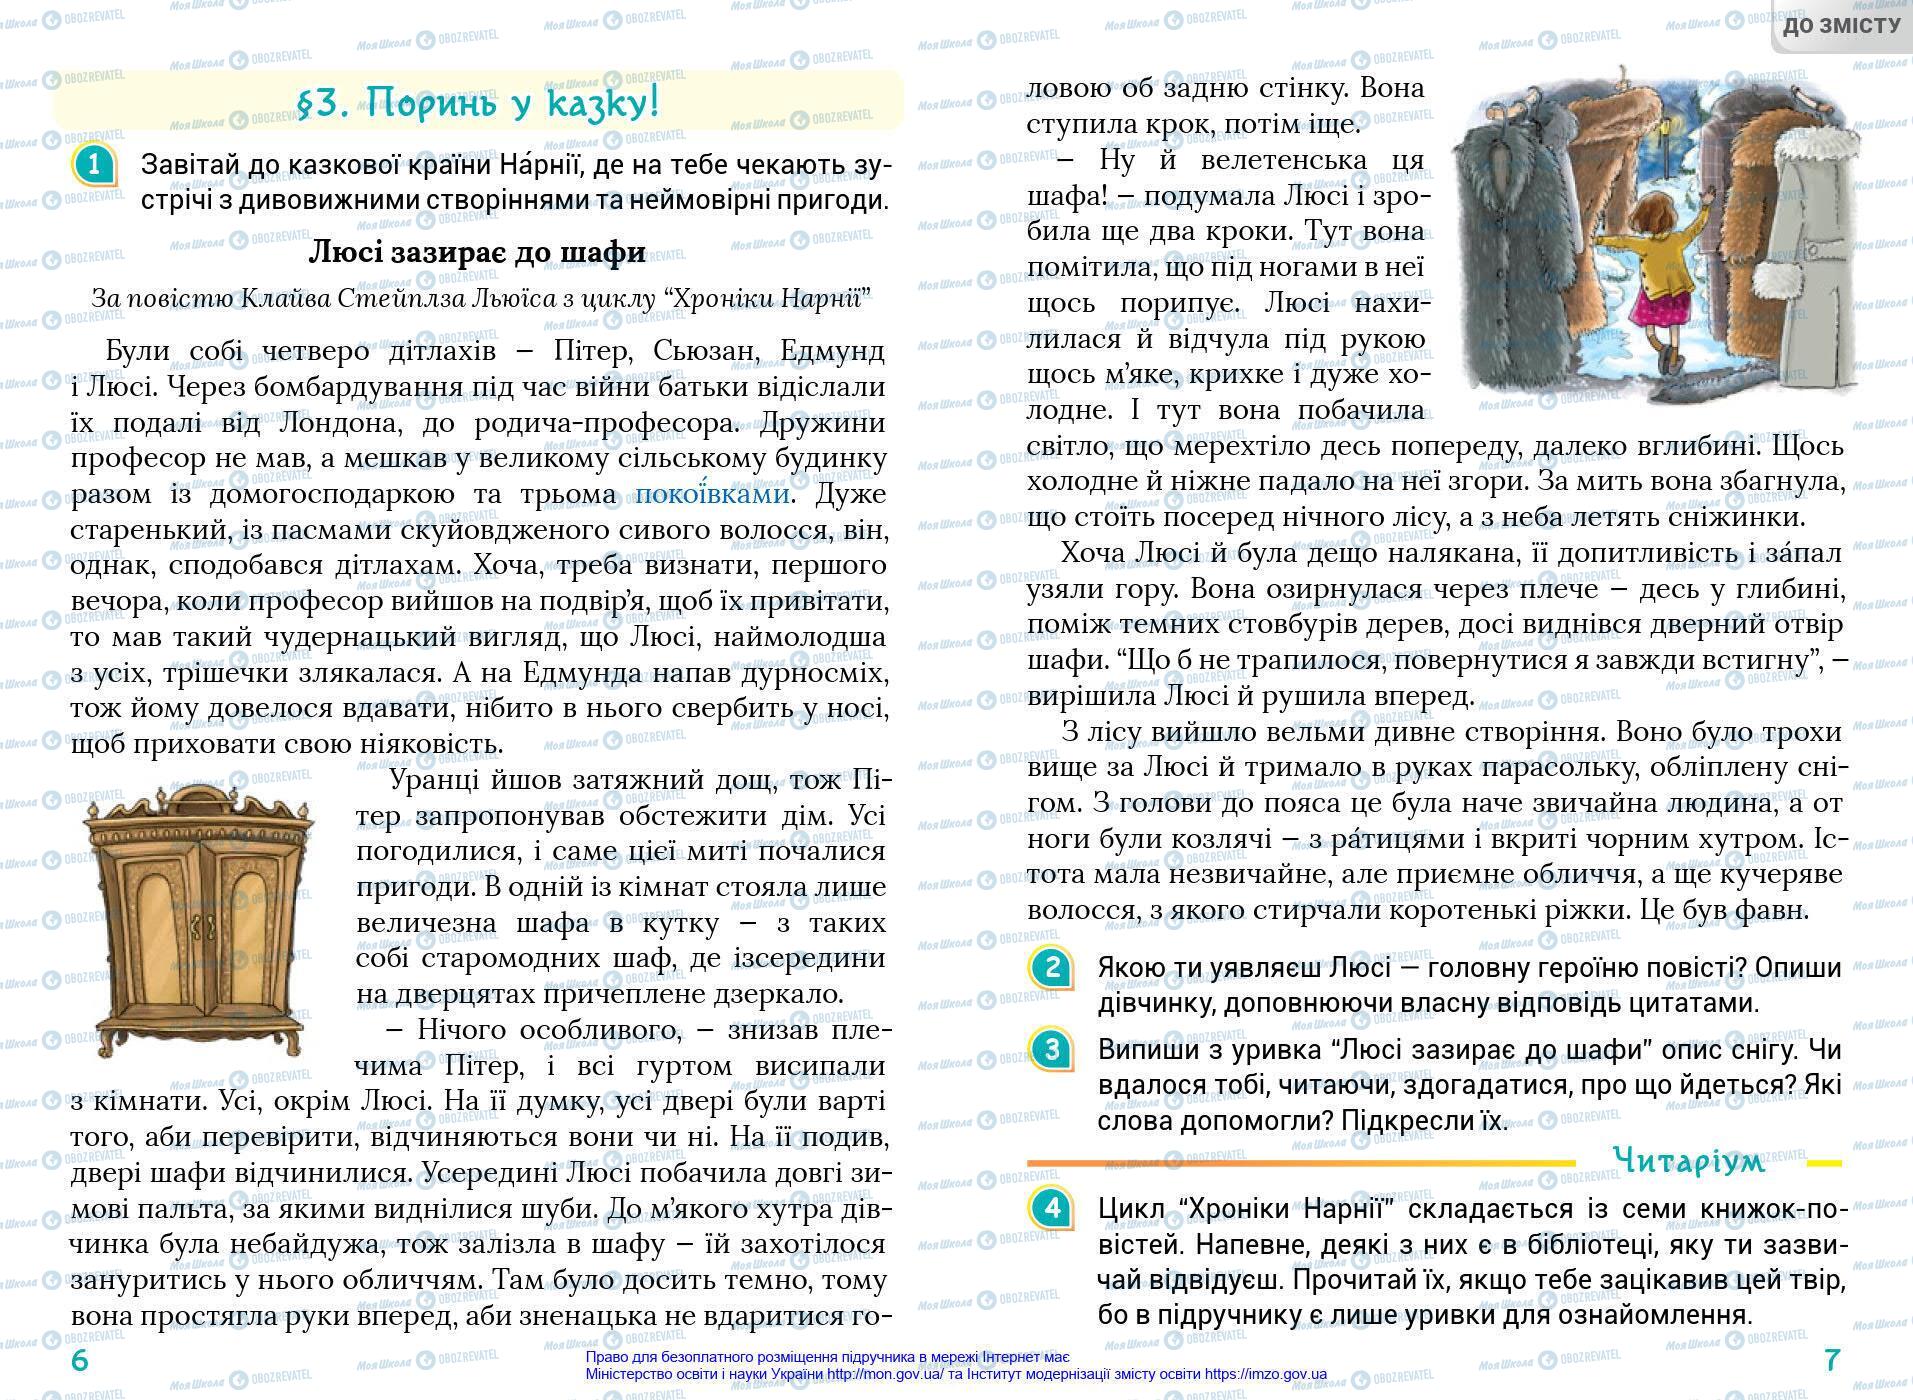 Підручники Українська мова 4 клас сторінка 6-7